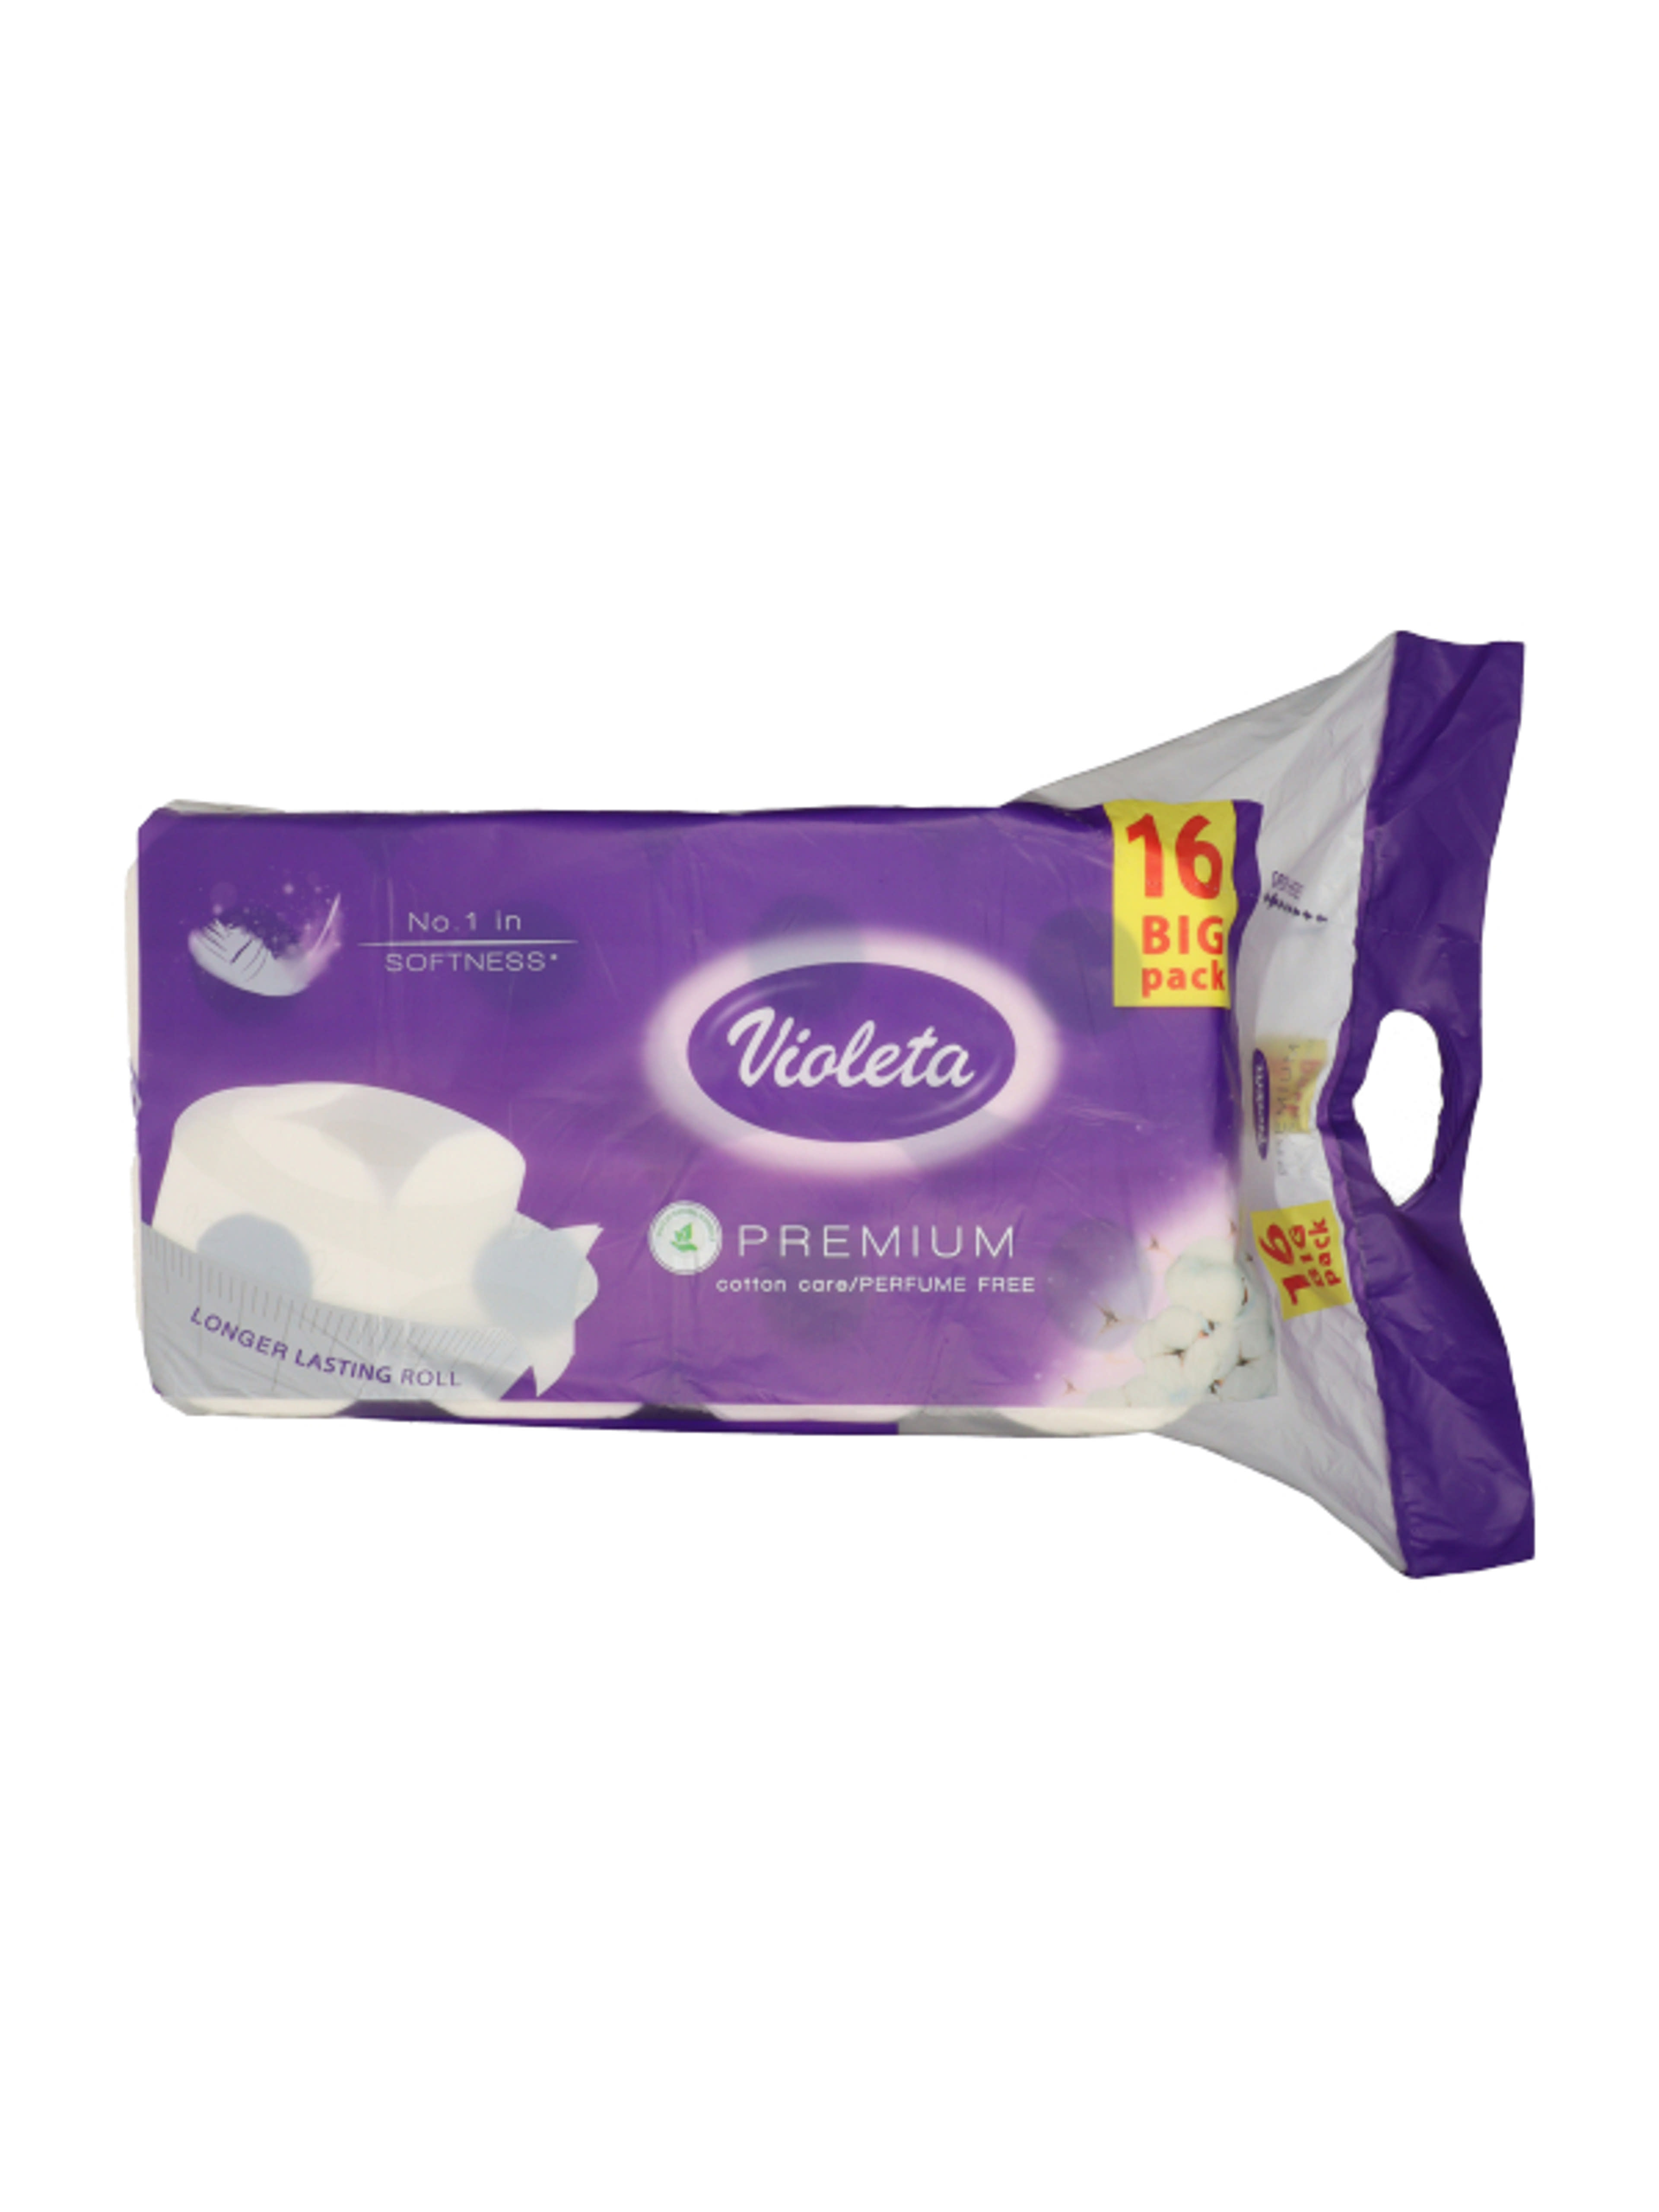 Violeta Prémium toalett papír 3 réteg - 16 db